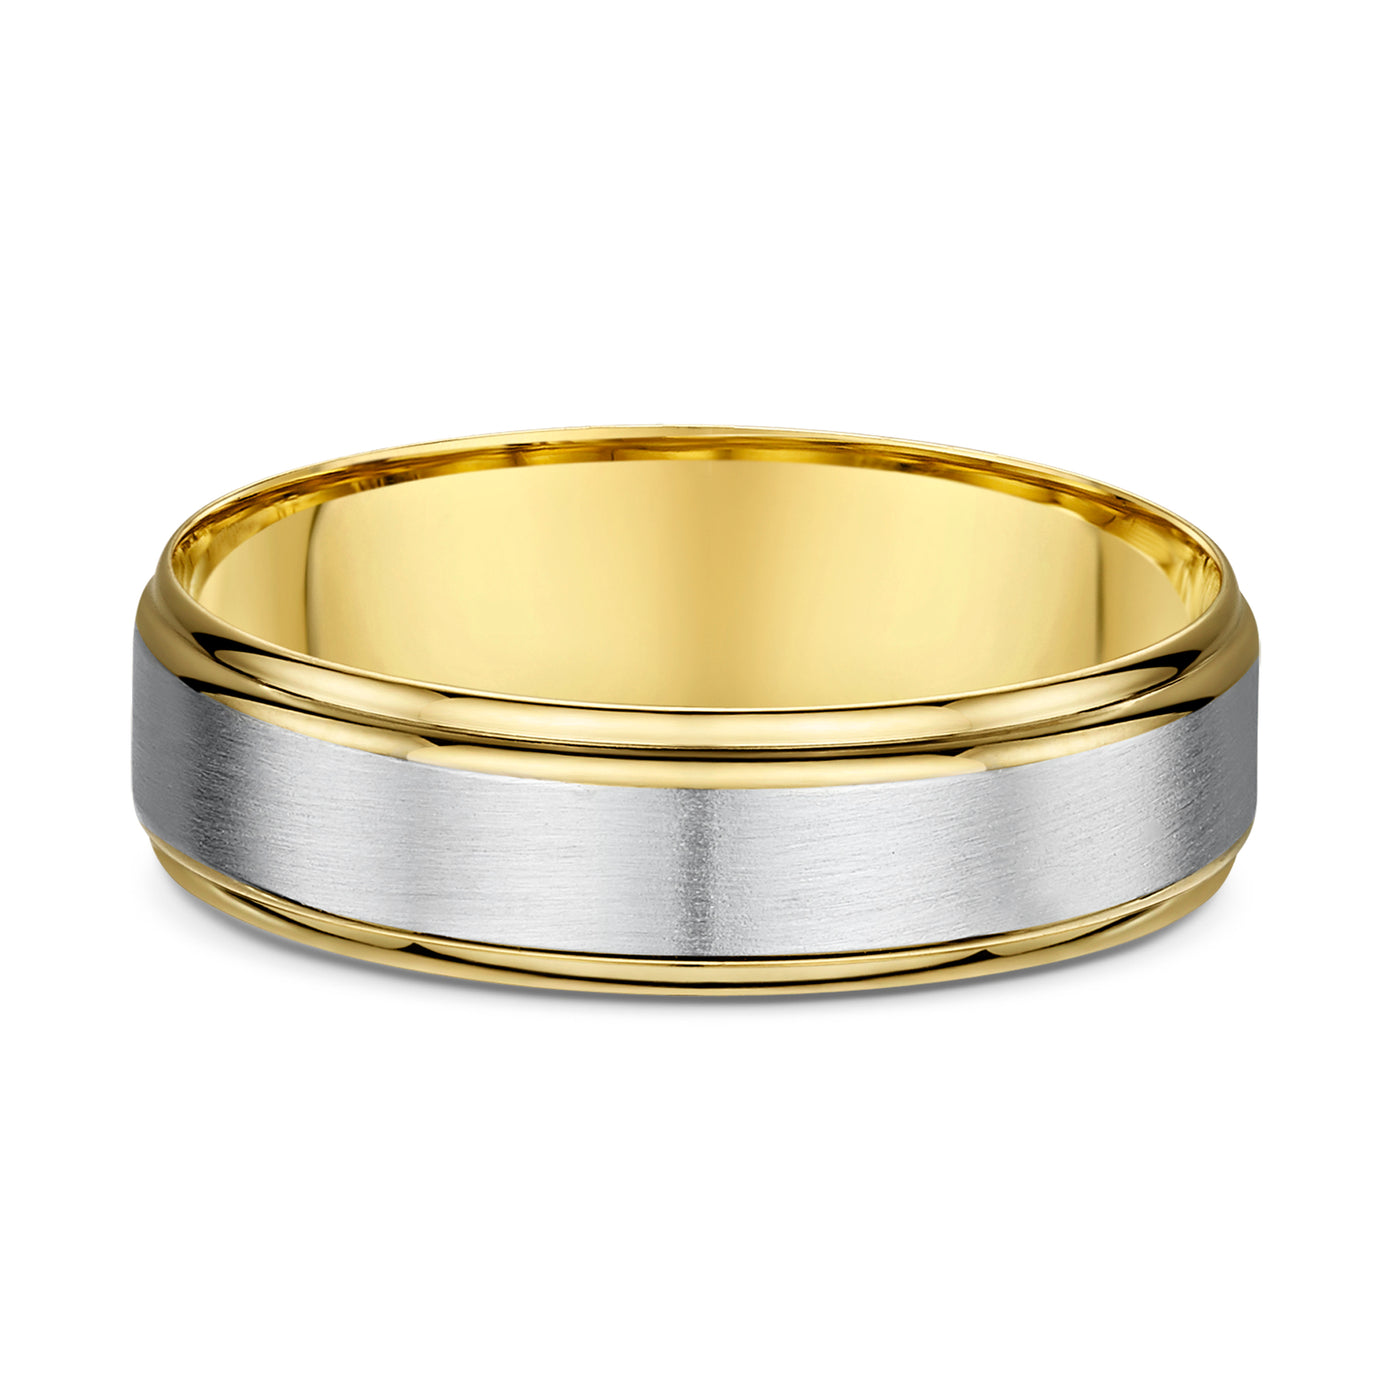 Yellow & White Gold Wedding Ring